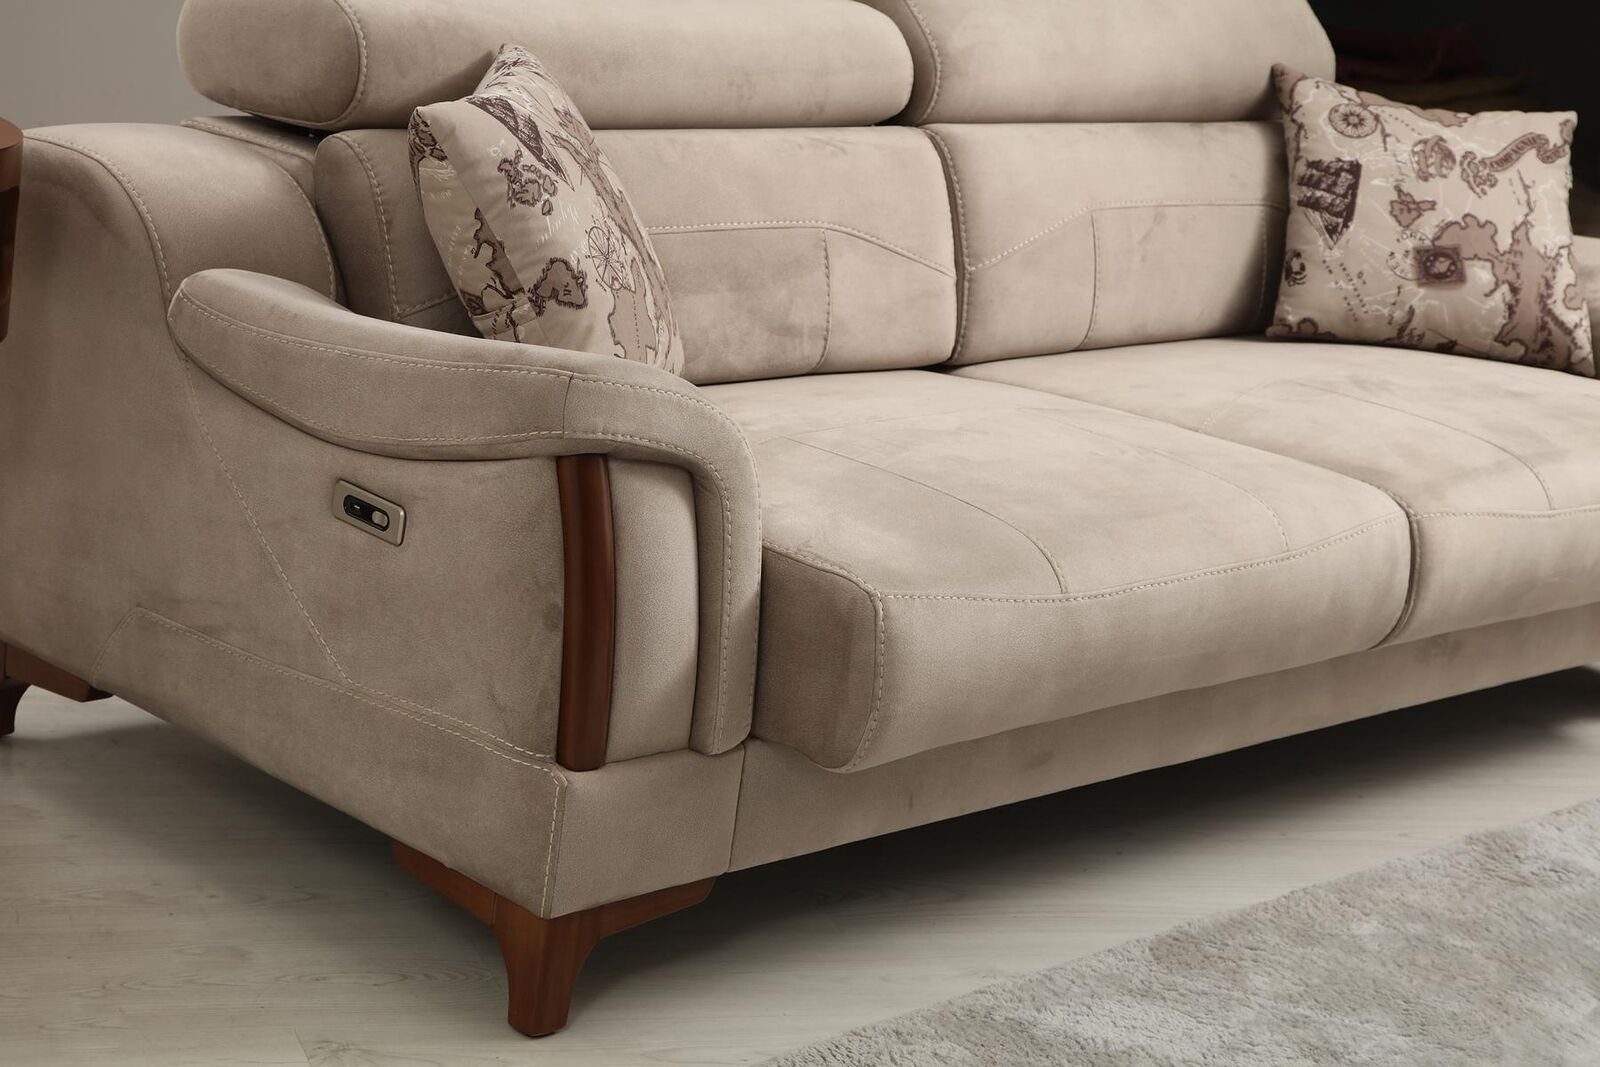 JVmoebel 3-Sitzer Sofa Wohnzimmer Möbel 1 Polster Teile, Europa Modern Designer Textil, in Made